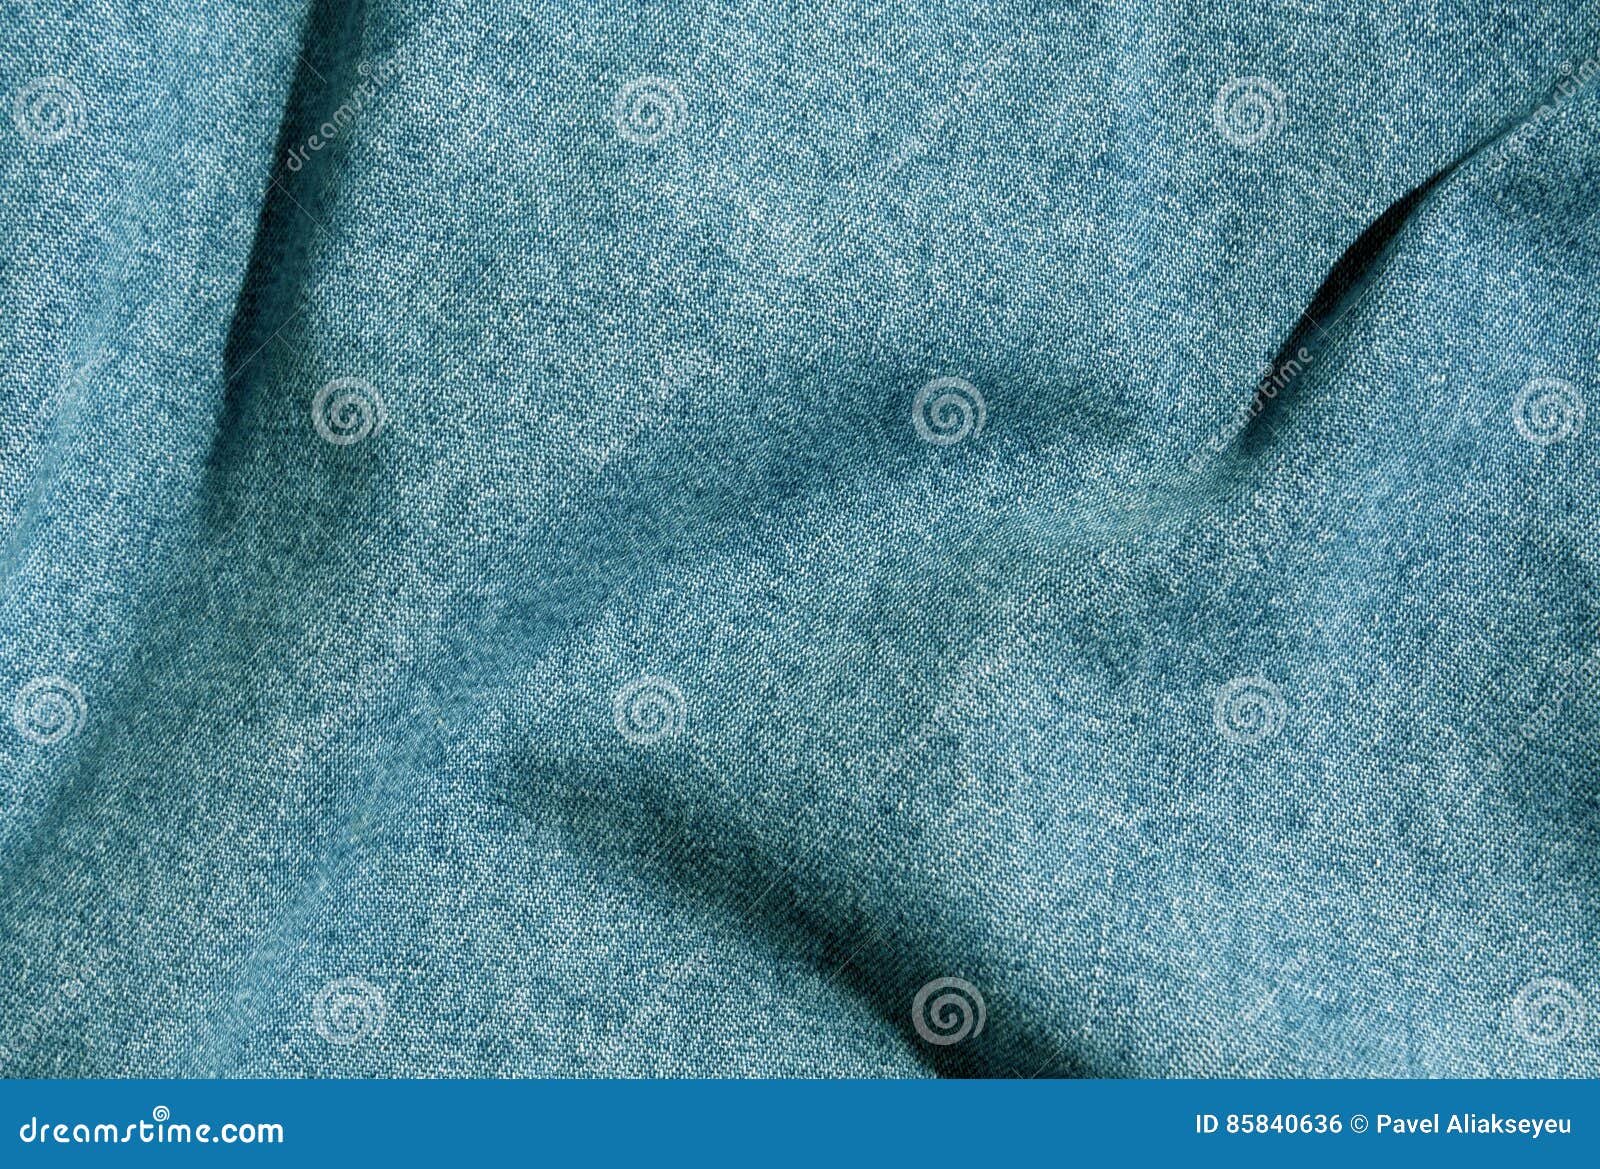 Handloom Selvedge denim 4.5 OZ - Carolina Blue - (Fabric Dyed)  (LWHD-FBD-3030-CRB-NI) | Eco-friendly Denim